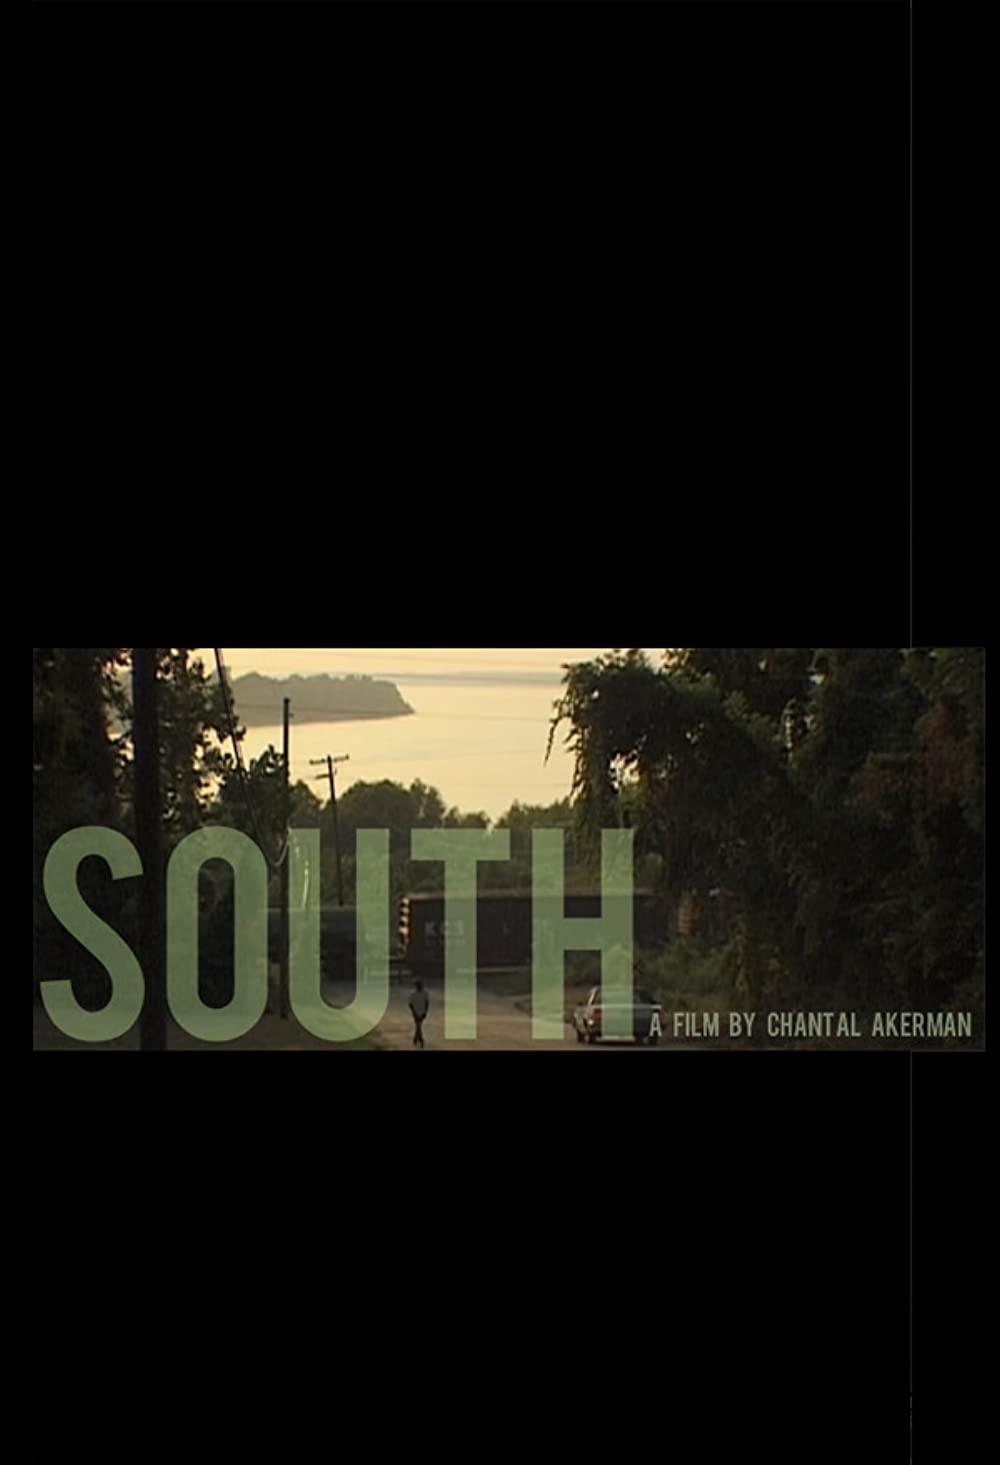 Filmbeschreibung zu Süden